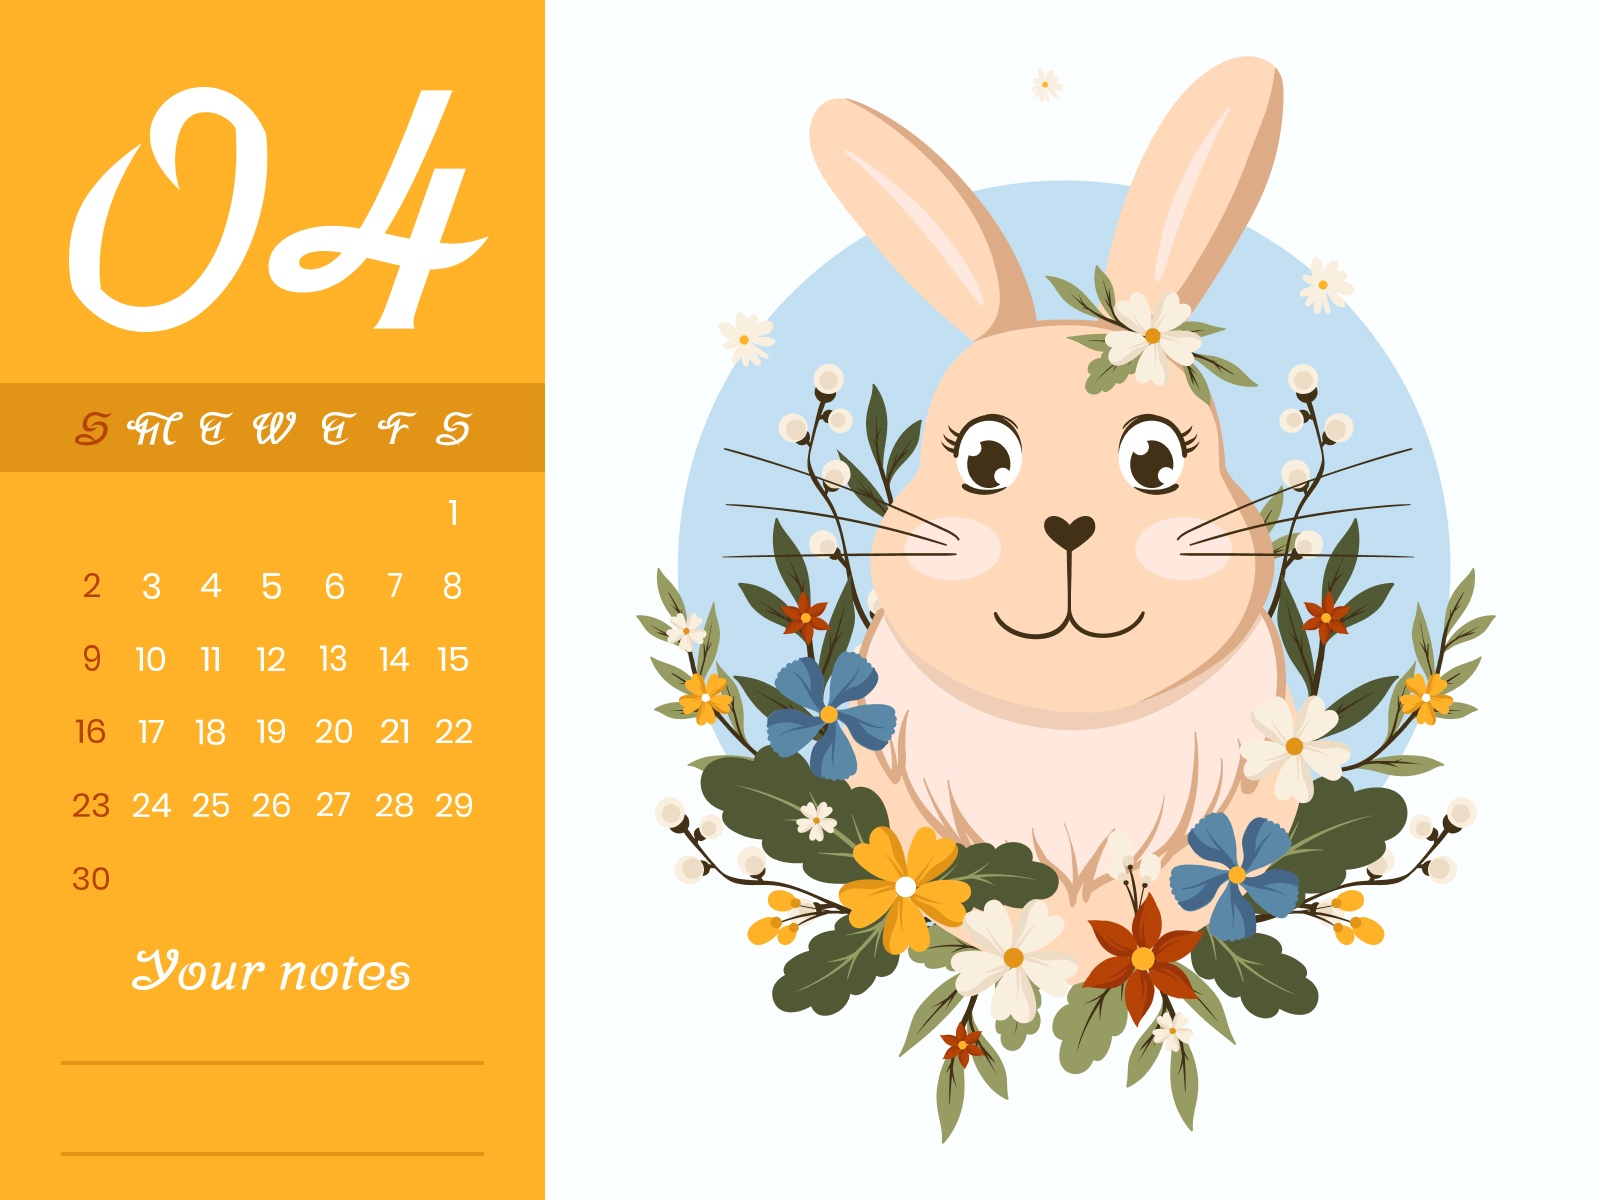 Calendar with a cute bunny on it.